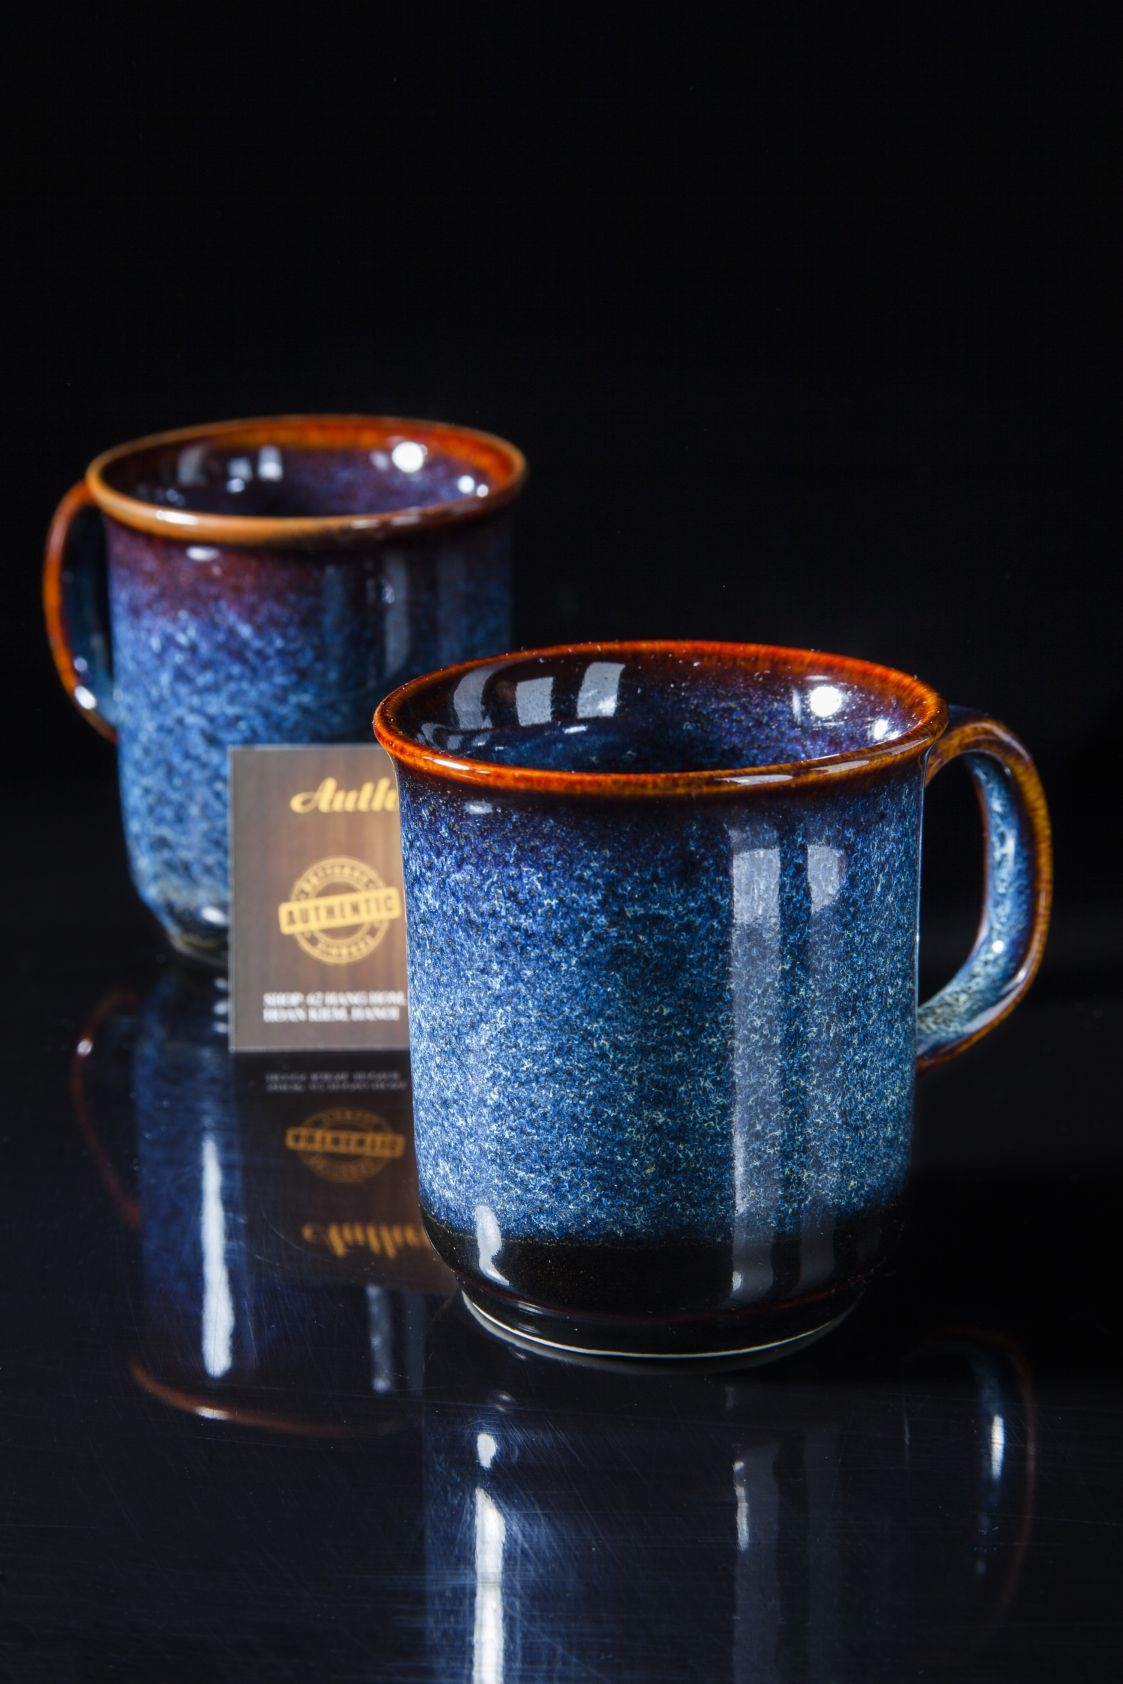 Blue glaze mug/ Cốc sứ men xanh hỏa biến sản xuất tại xưởng gia oanh Authentic bat trang